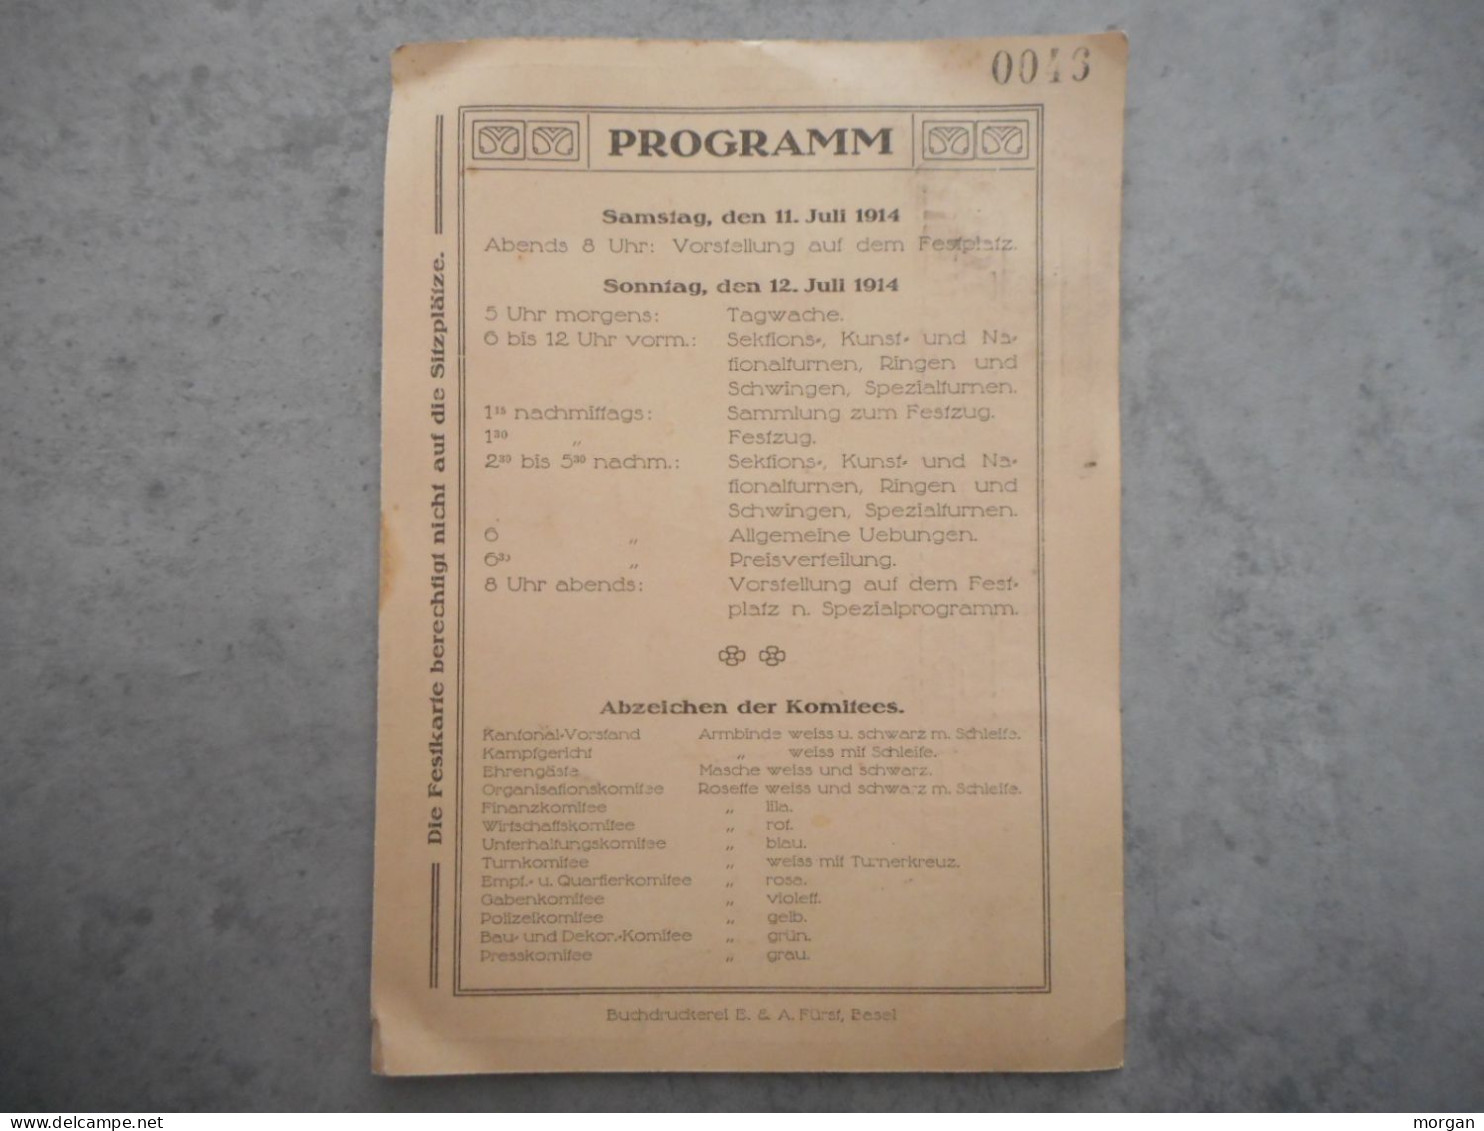 SUISSE, BALE, BASEL, 1914, PROGRAMME BASELSTADTISCHES KANTONALTURNFEST, BASEL HORBURG JULI 1914, FESTKARTE - Affiches